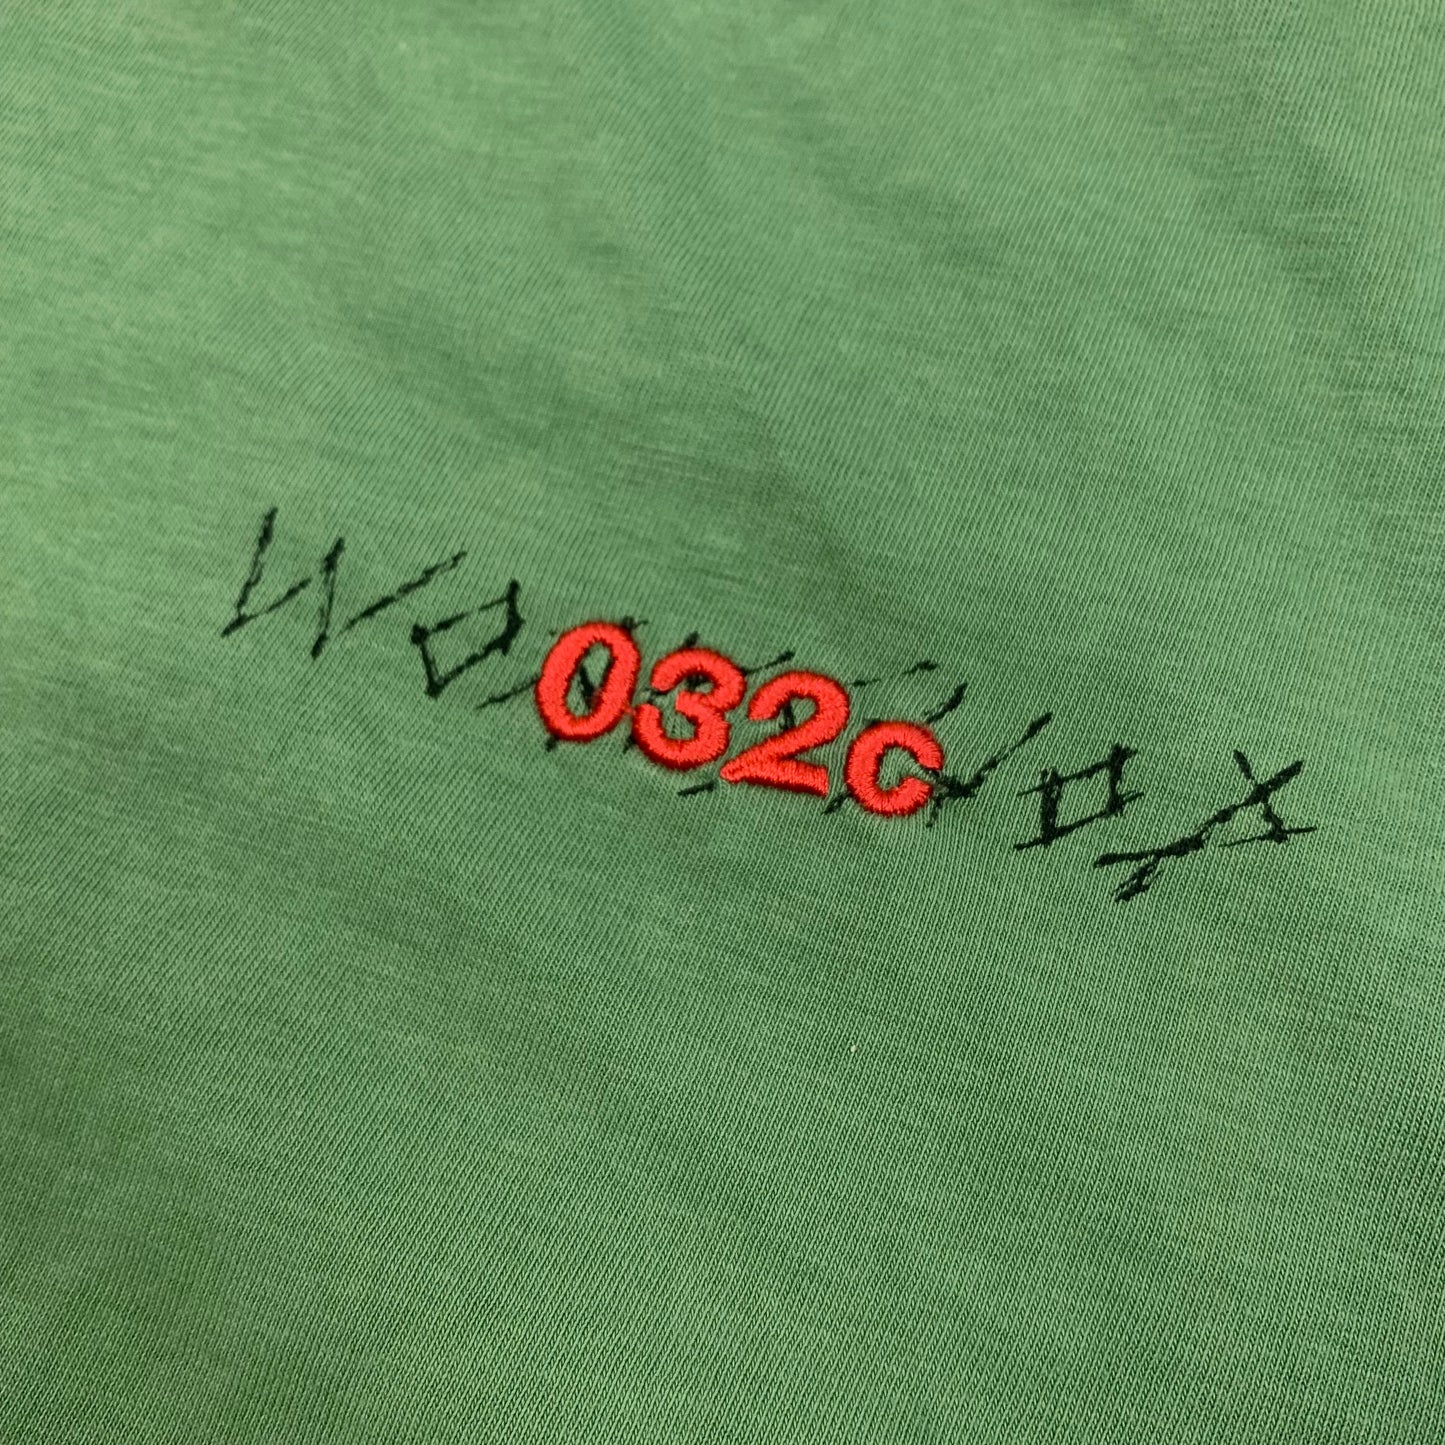 032c Workshop T-Shirt